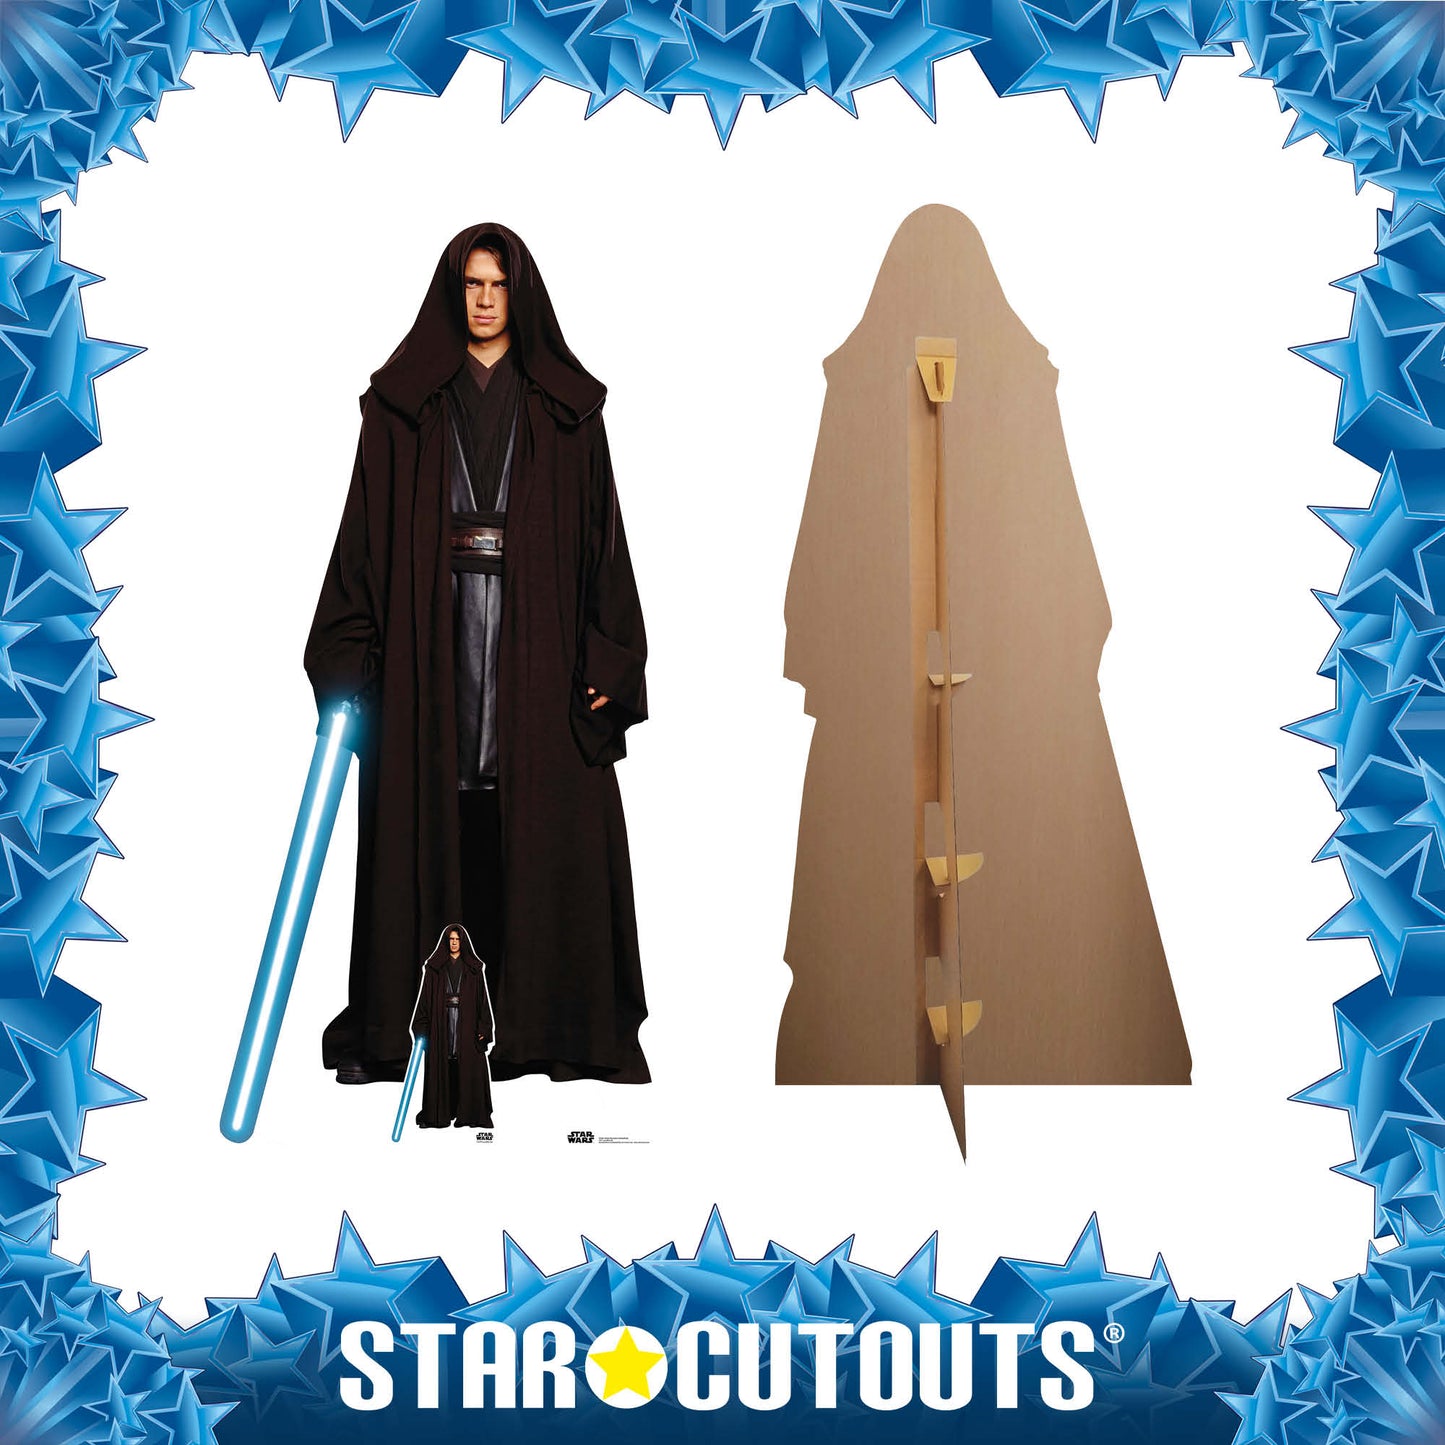 SC4381 Anakin Skywalker Hayden ChristensenStar Wars Cardboard Cut Out Height 196cm